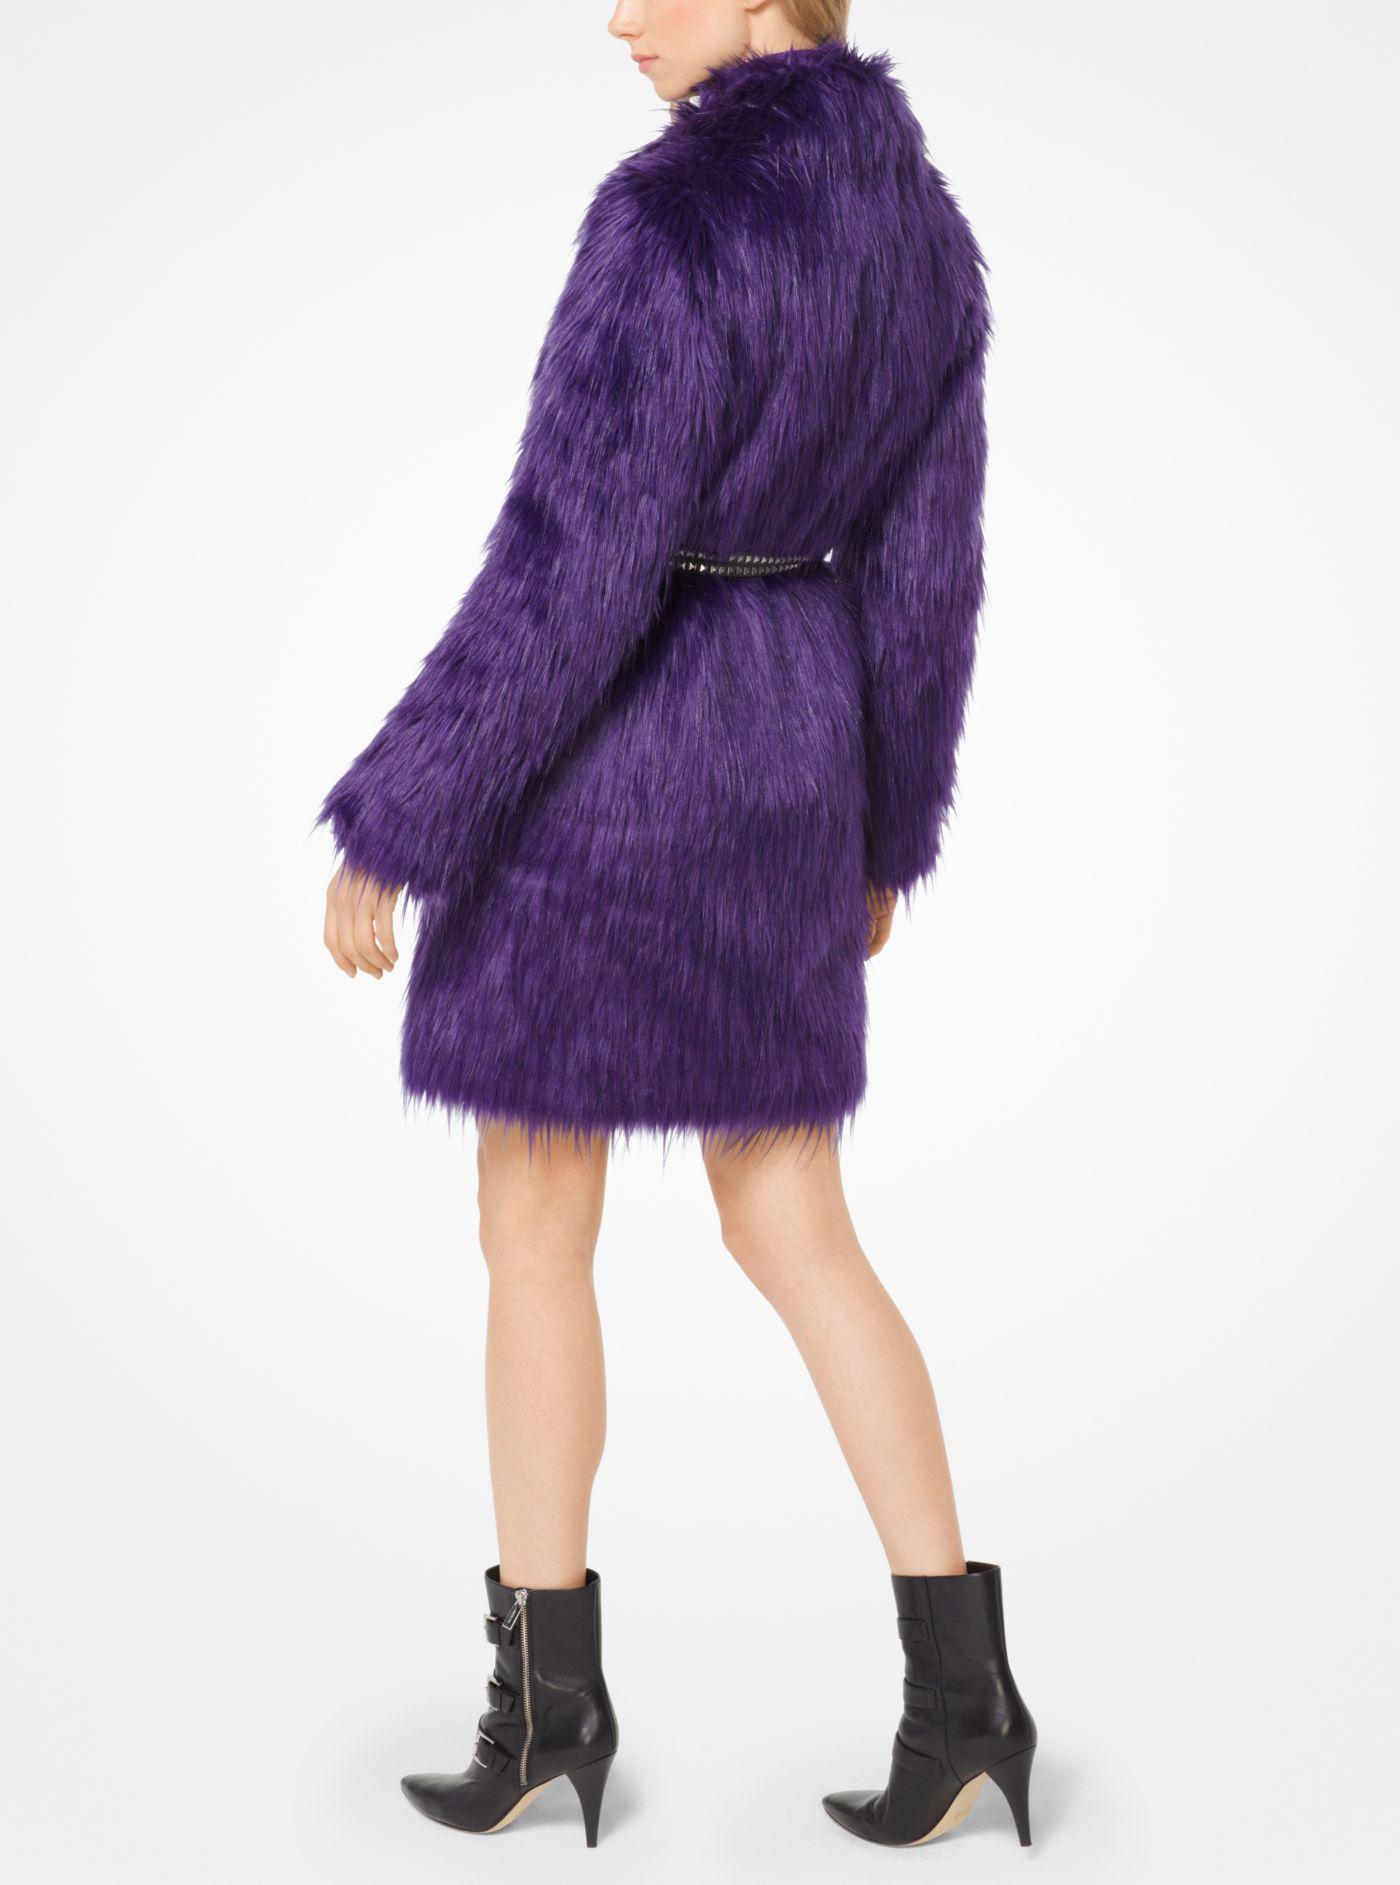 Michael Kors Belted Faux-fur Coat in Iris (Purple) - Lyst